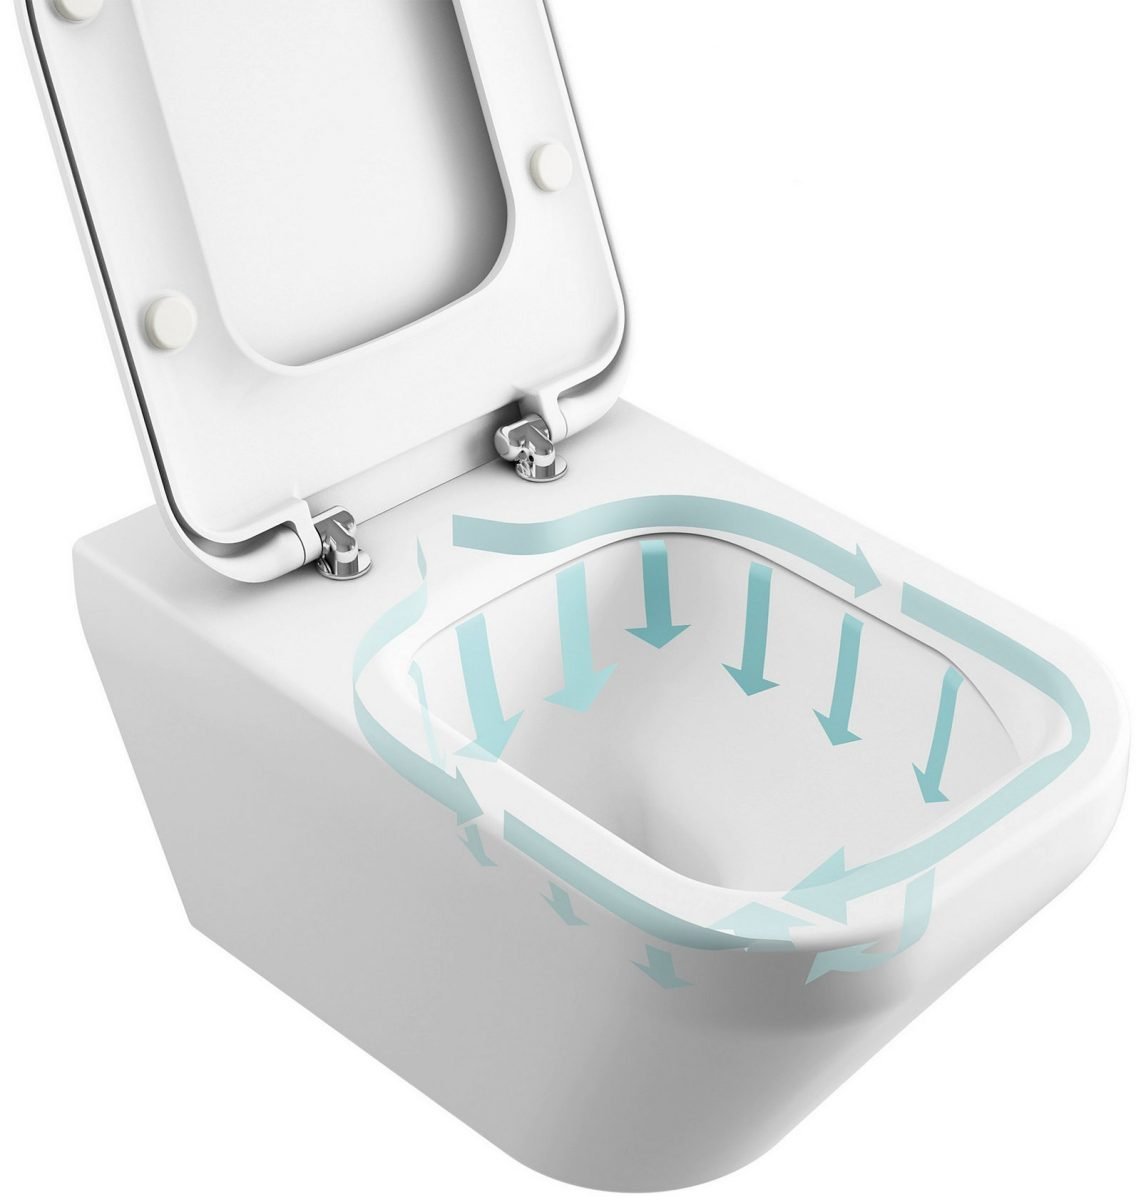 Vaso WC sospeso Fast in ceramica completo di sedile softclose Sanitari Bagno